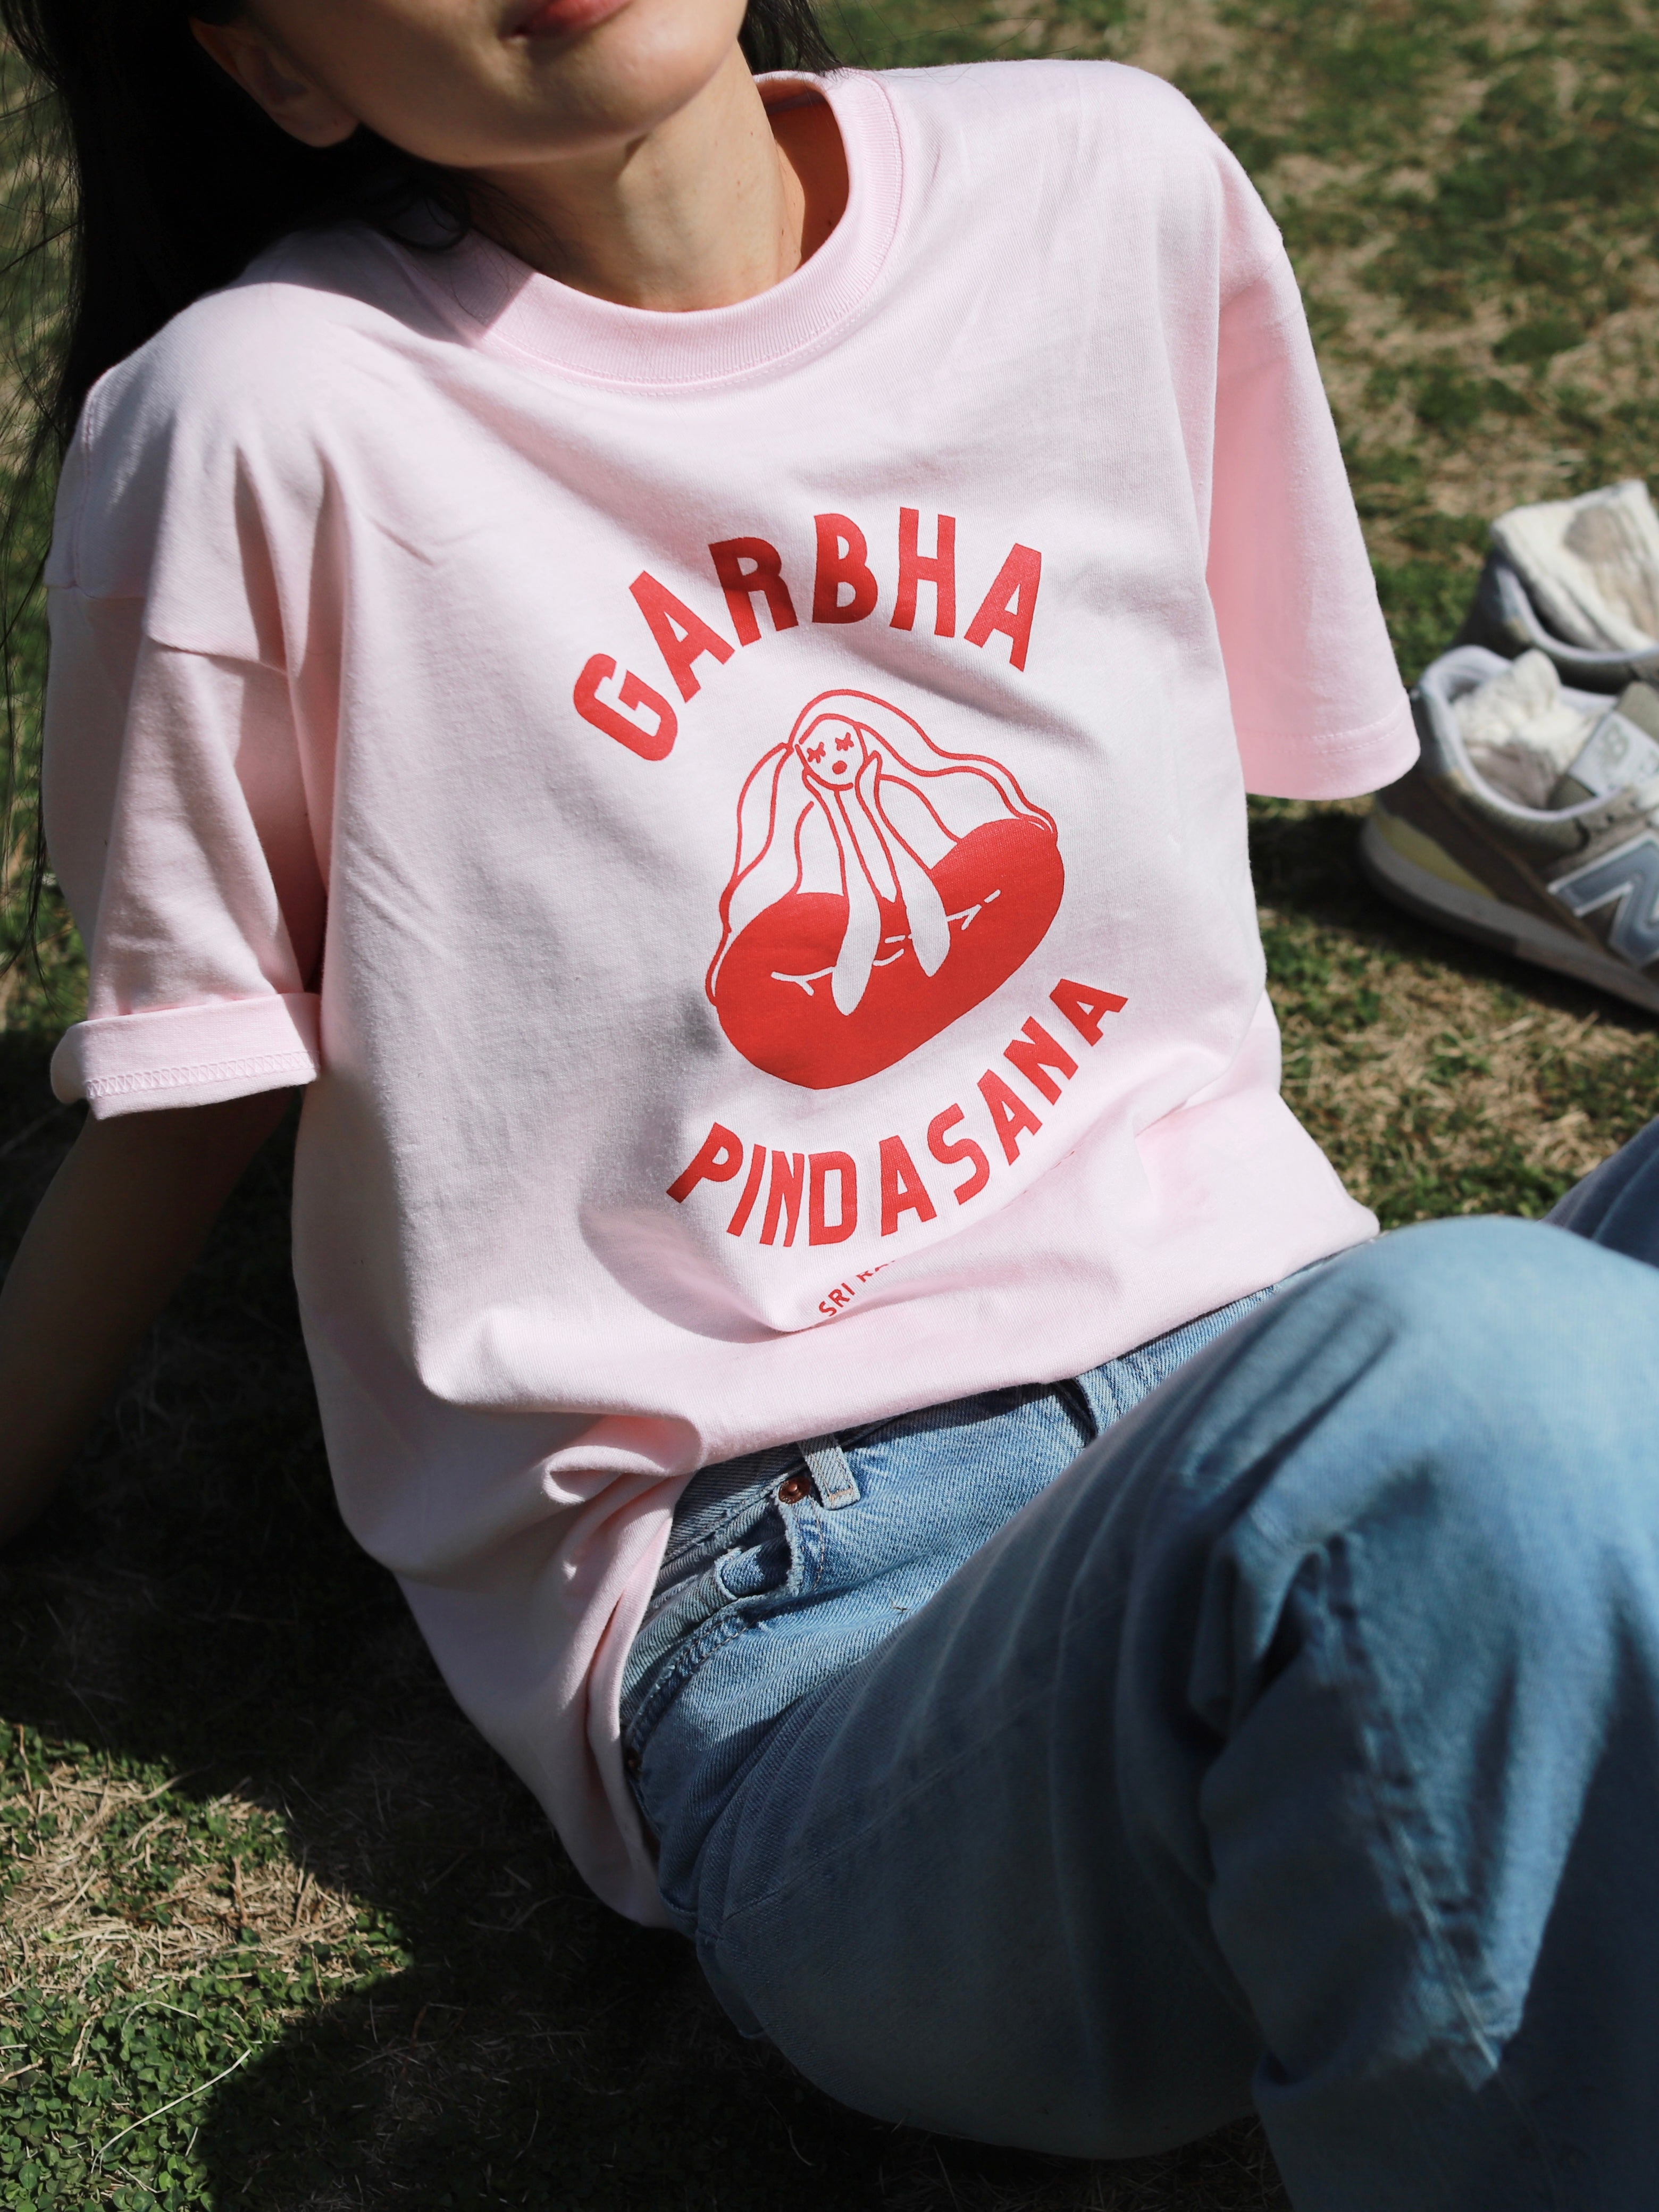 SRI.RAMANA.RITA.YOGUE／GARBHA PINDASNA Tシャツ（ピンク× 赤）